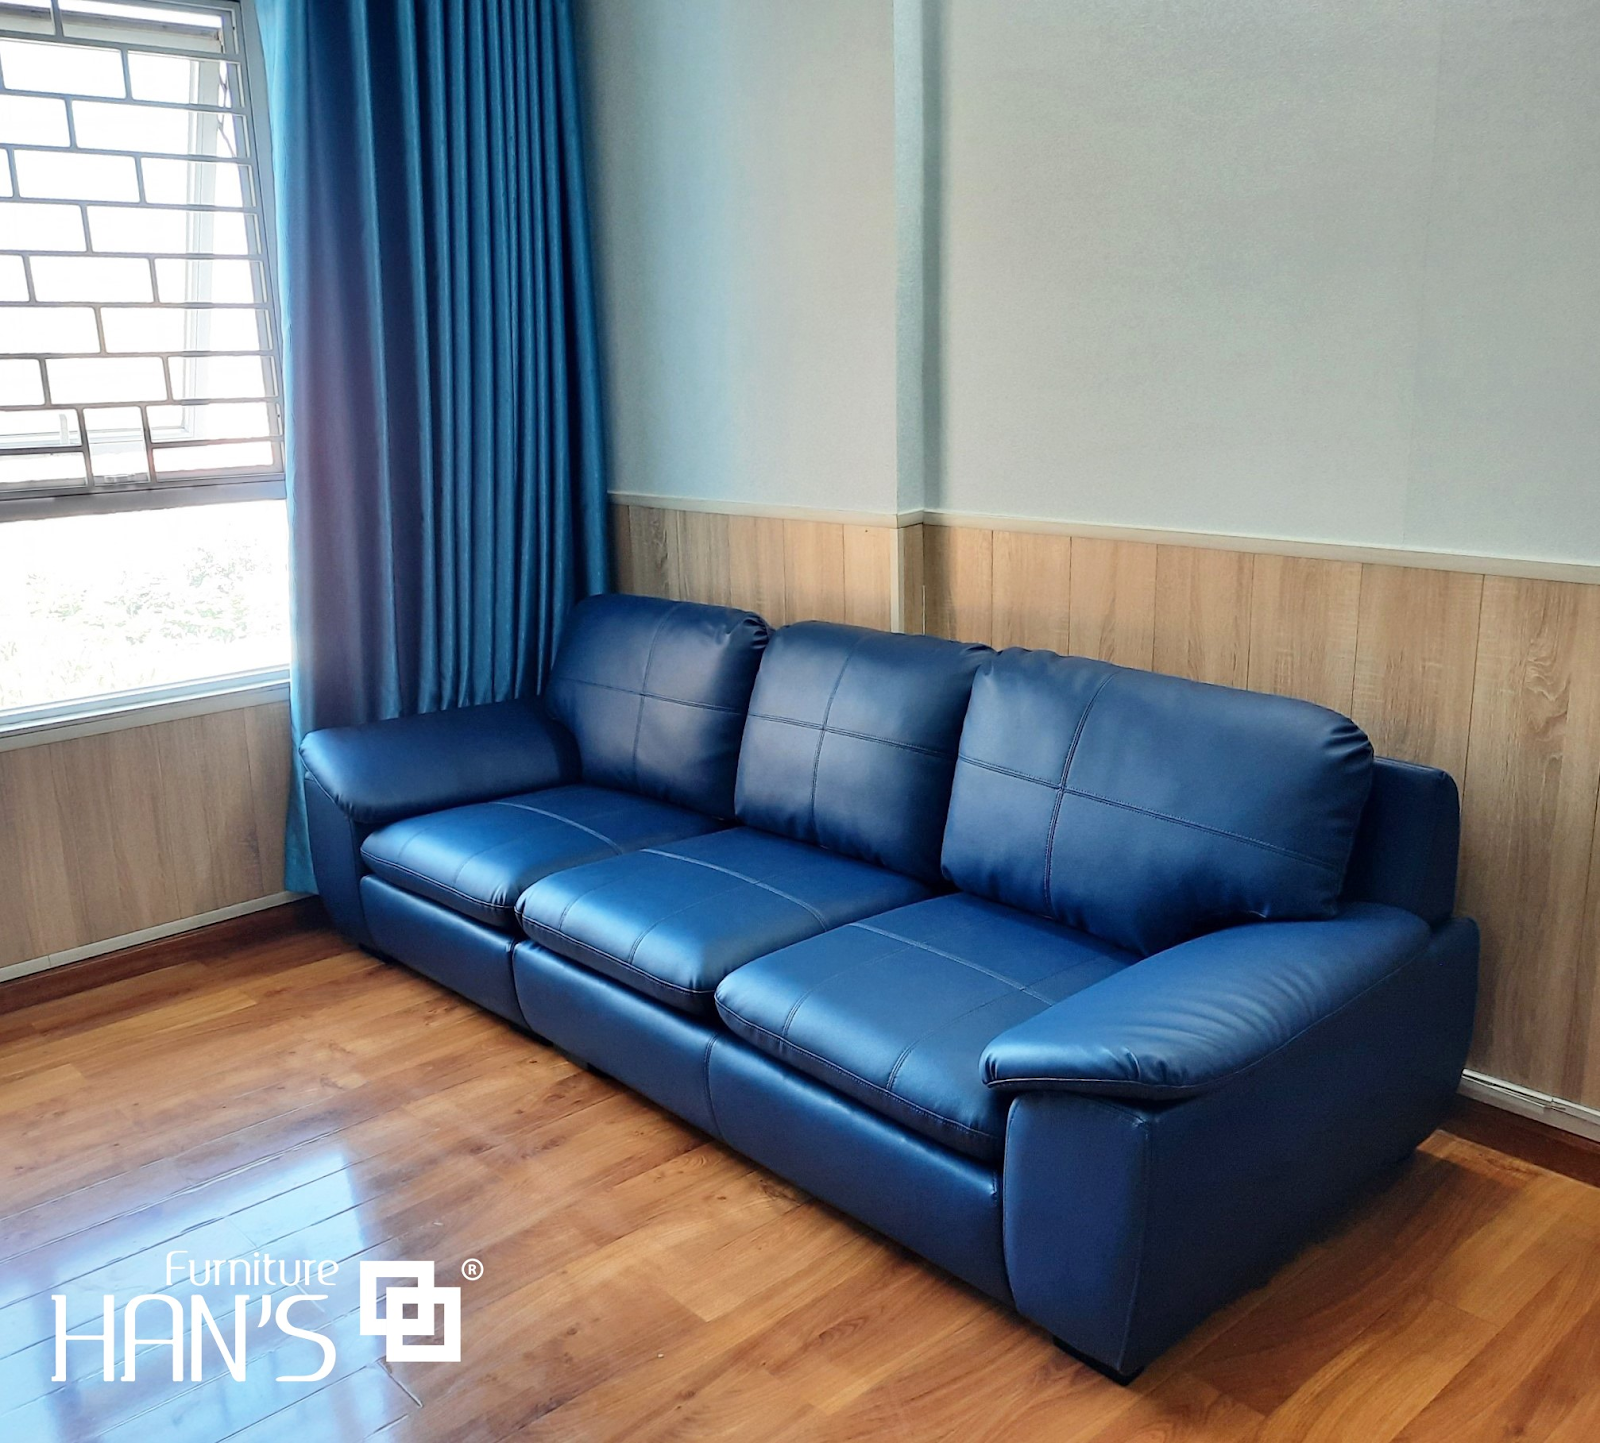 Tùy vào từng vị trí mà màu sắc ghế sofa cũng có nhiều thay đổi phù hợp